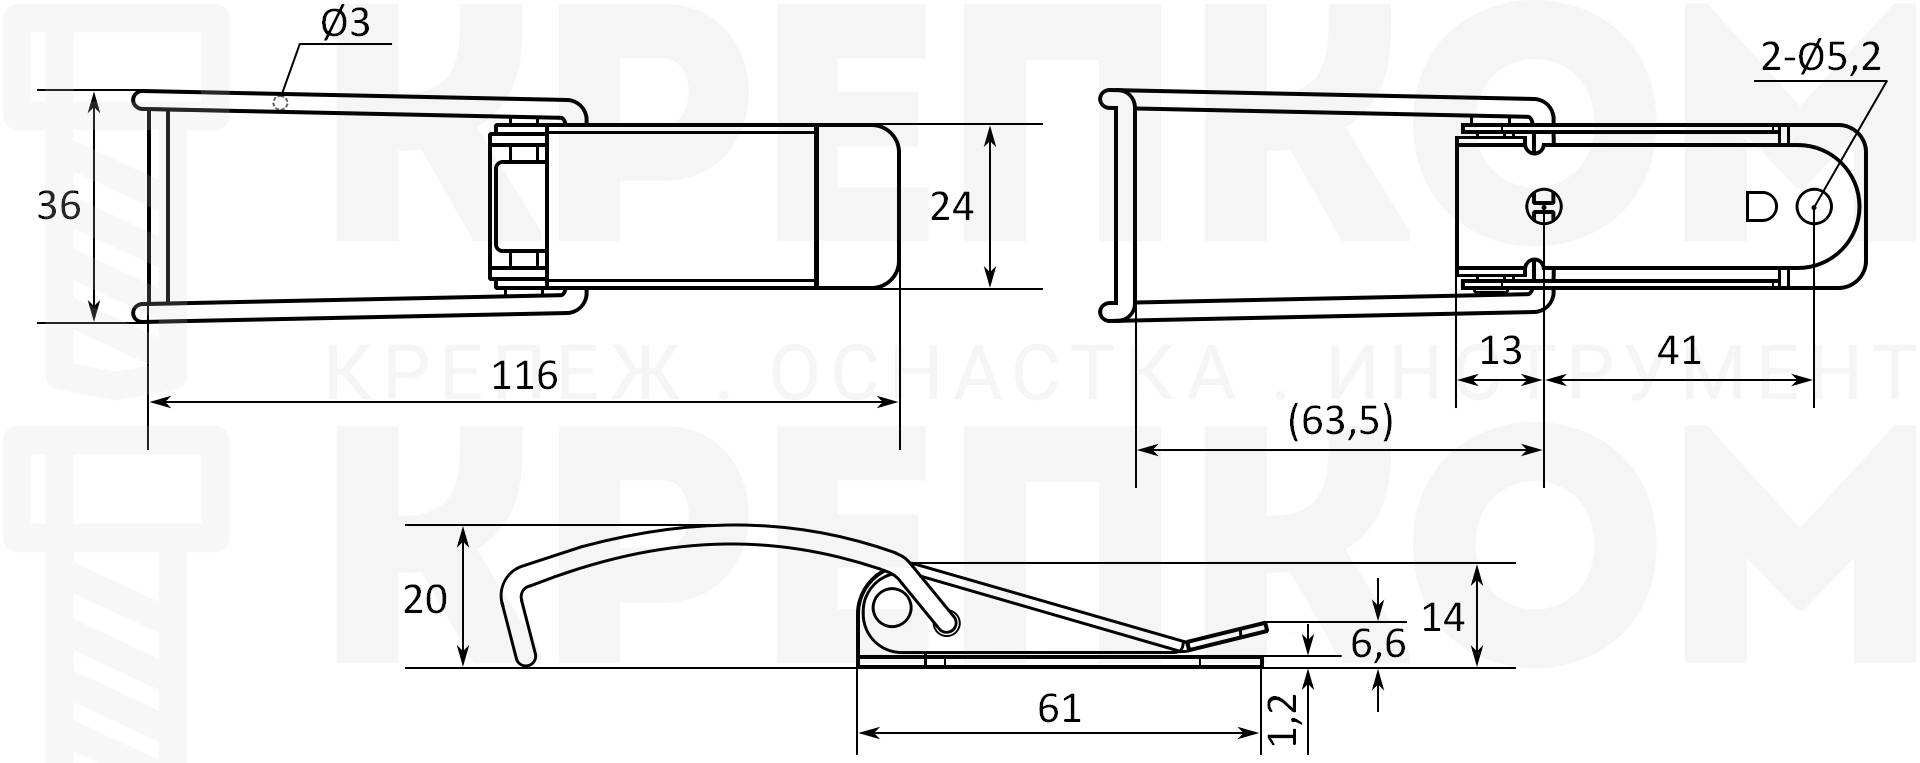 Защелка натяжная для крышек и ящиков L=116 B25C, схема и размеры